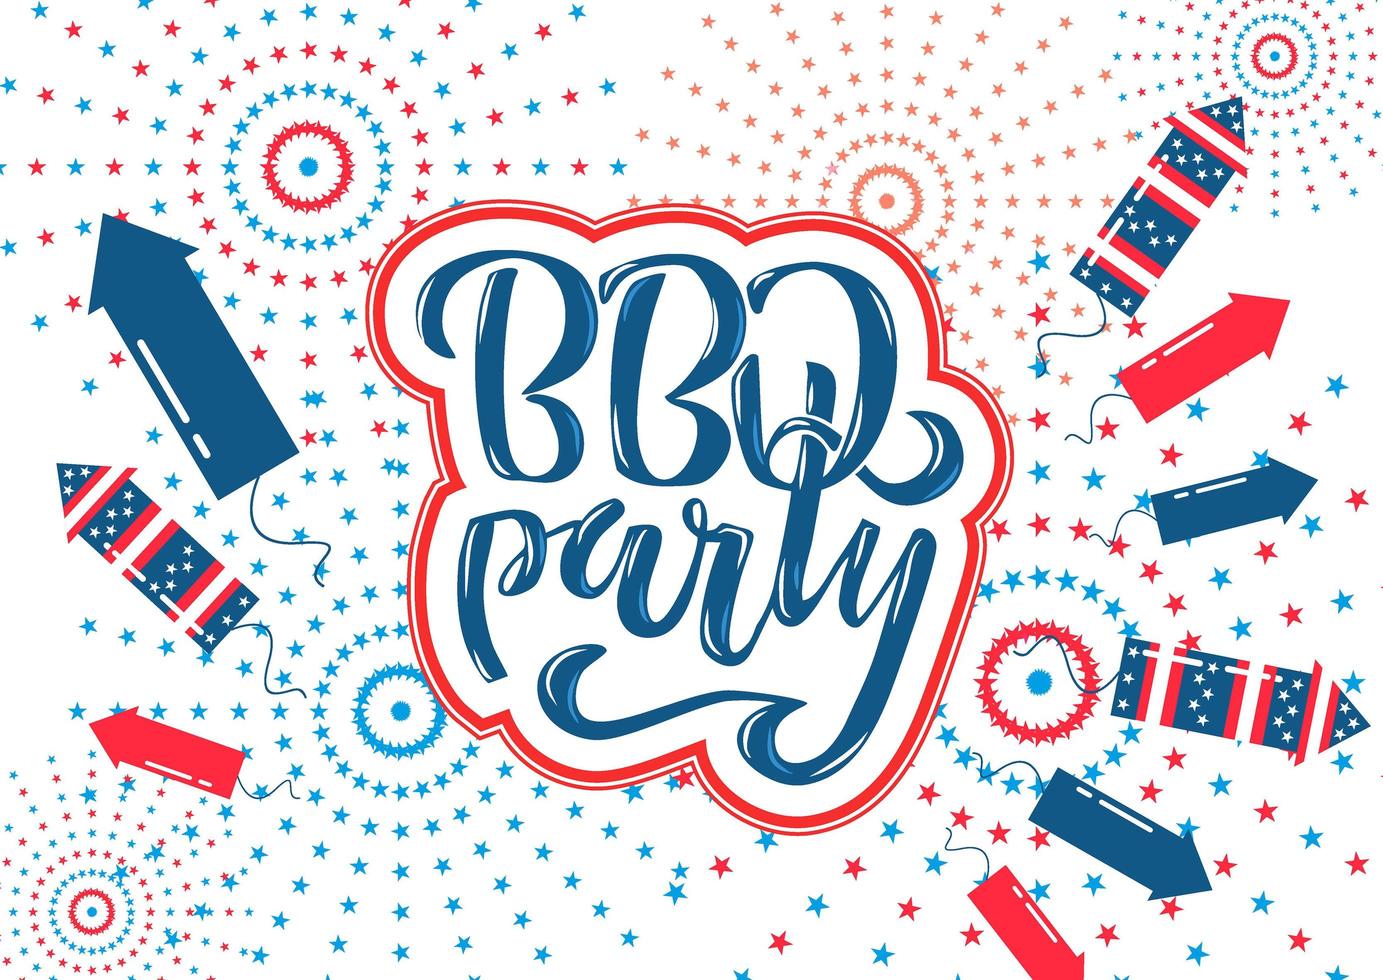 4 luglio bbq party lettering invito al barbecue del giorno dell'indipendenza americana con decorazioni del 4 luglio stelle, bandiere, fuochi d'artificio su sfondo bianco. illustrazione disegnata a mano di vettore. vettore